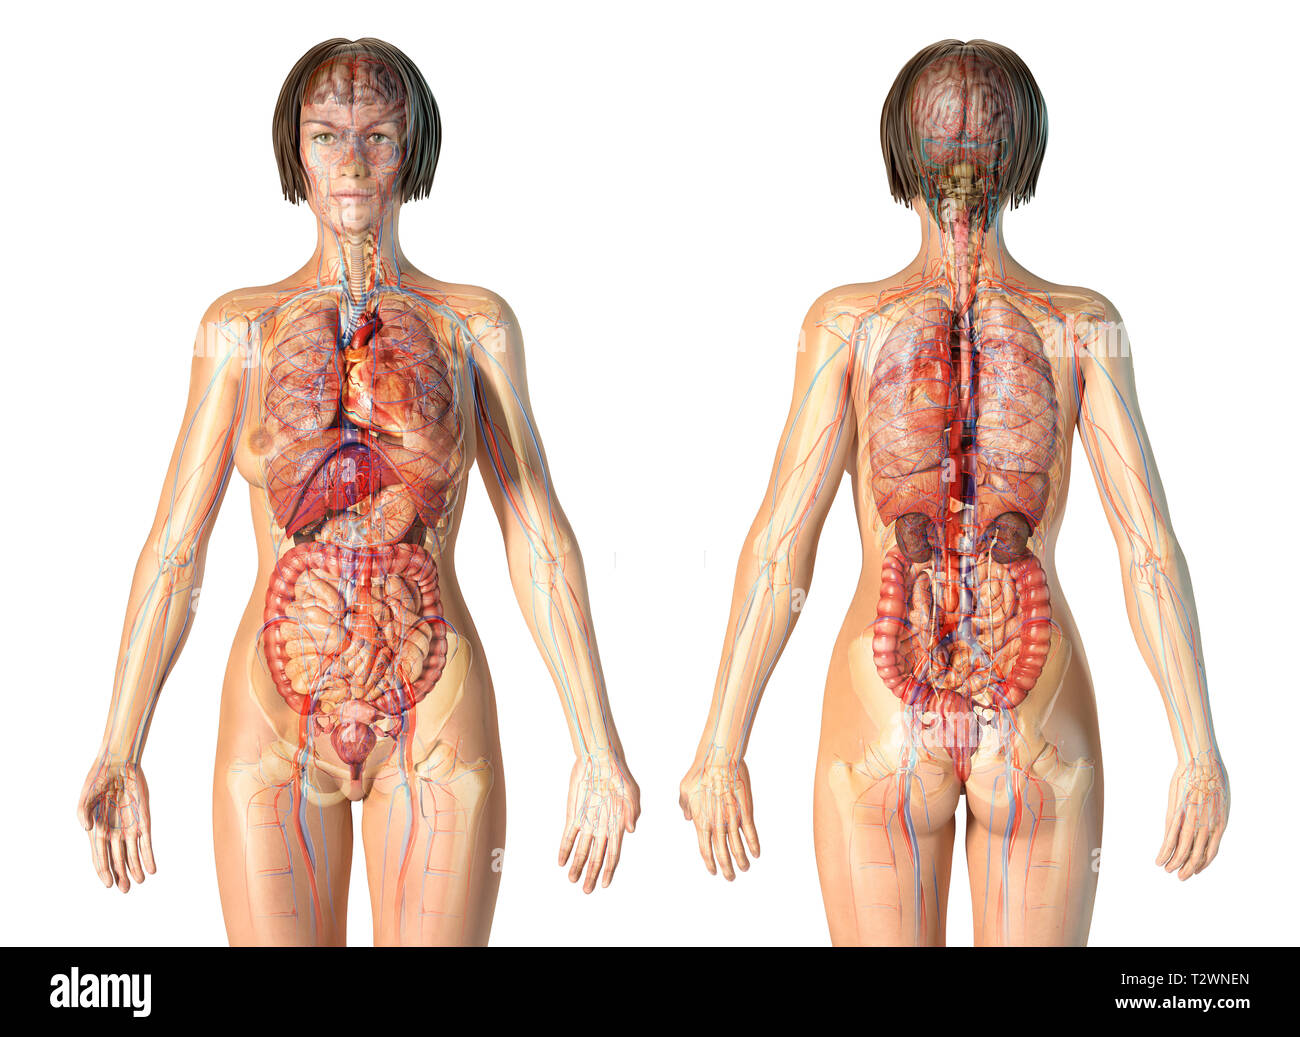 Anatomía de la mujer sistema cardiovascular con el esqueleto y los órganos internos. Efecto Fantasma sobre fondo blanco. Foto de stock